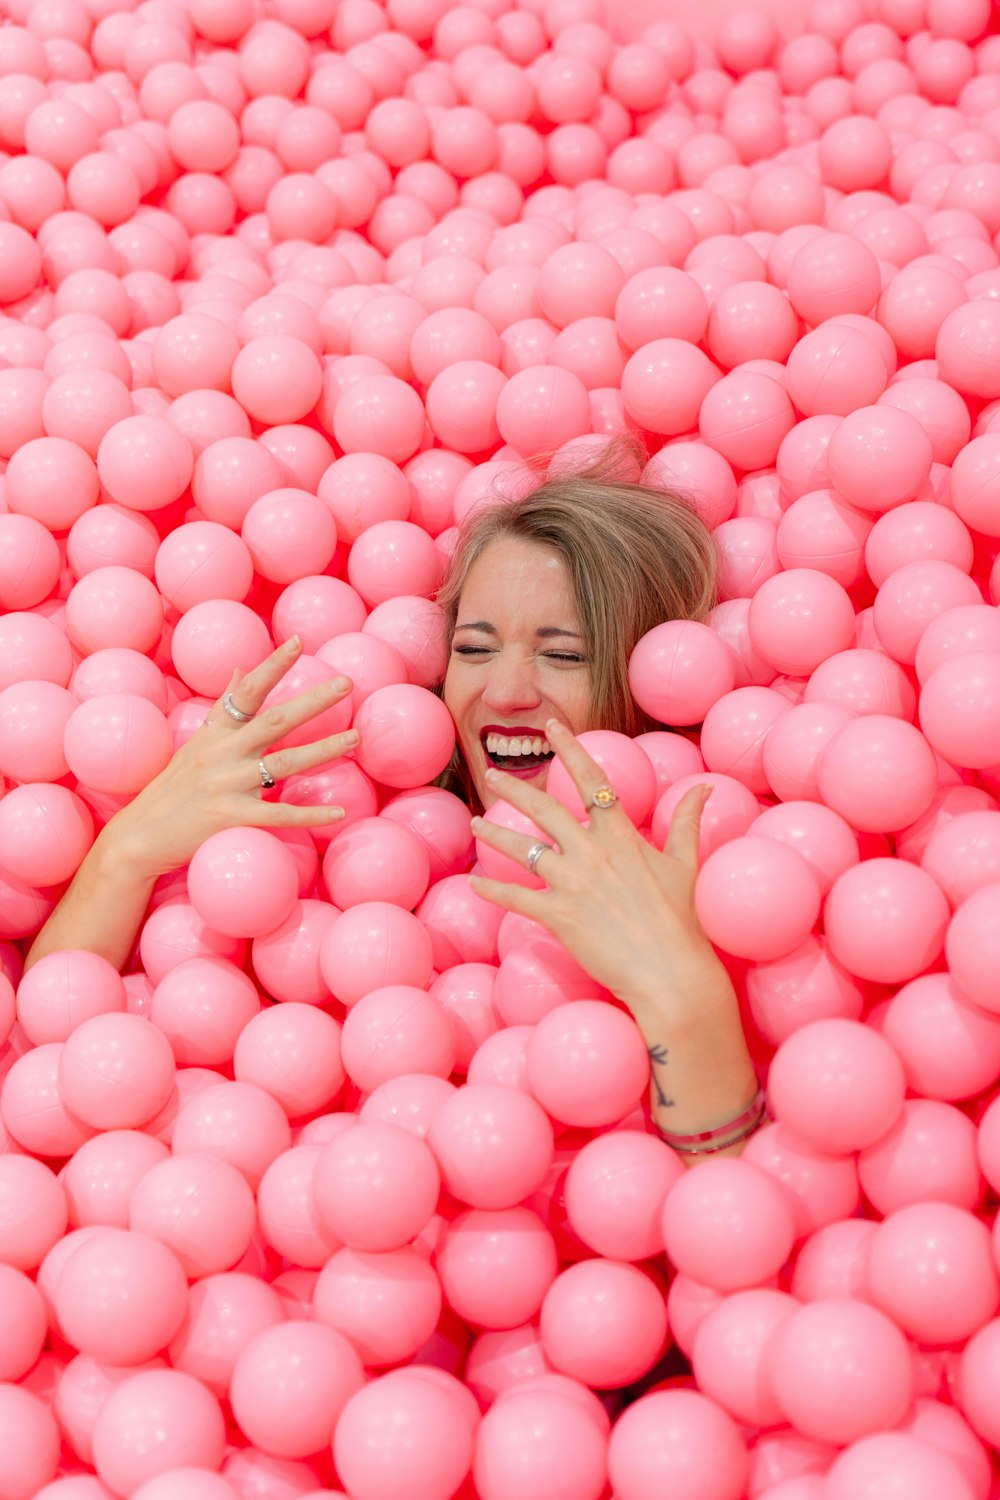 ピンクの丸いボールに横たわっているブロンドの髪の女性